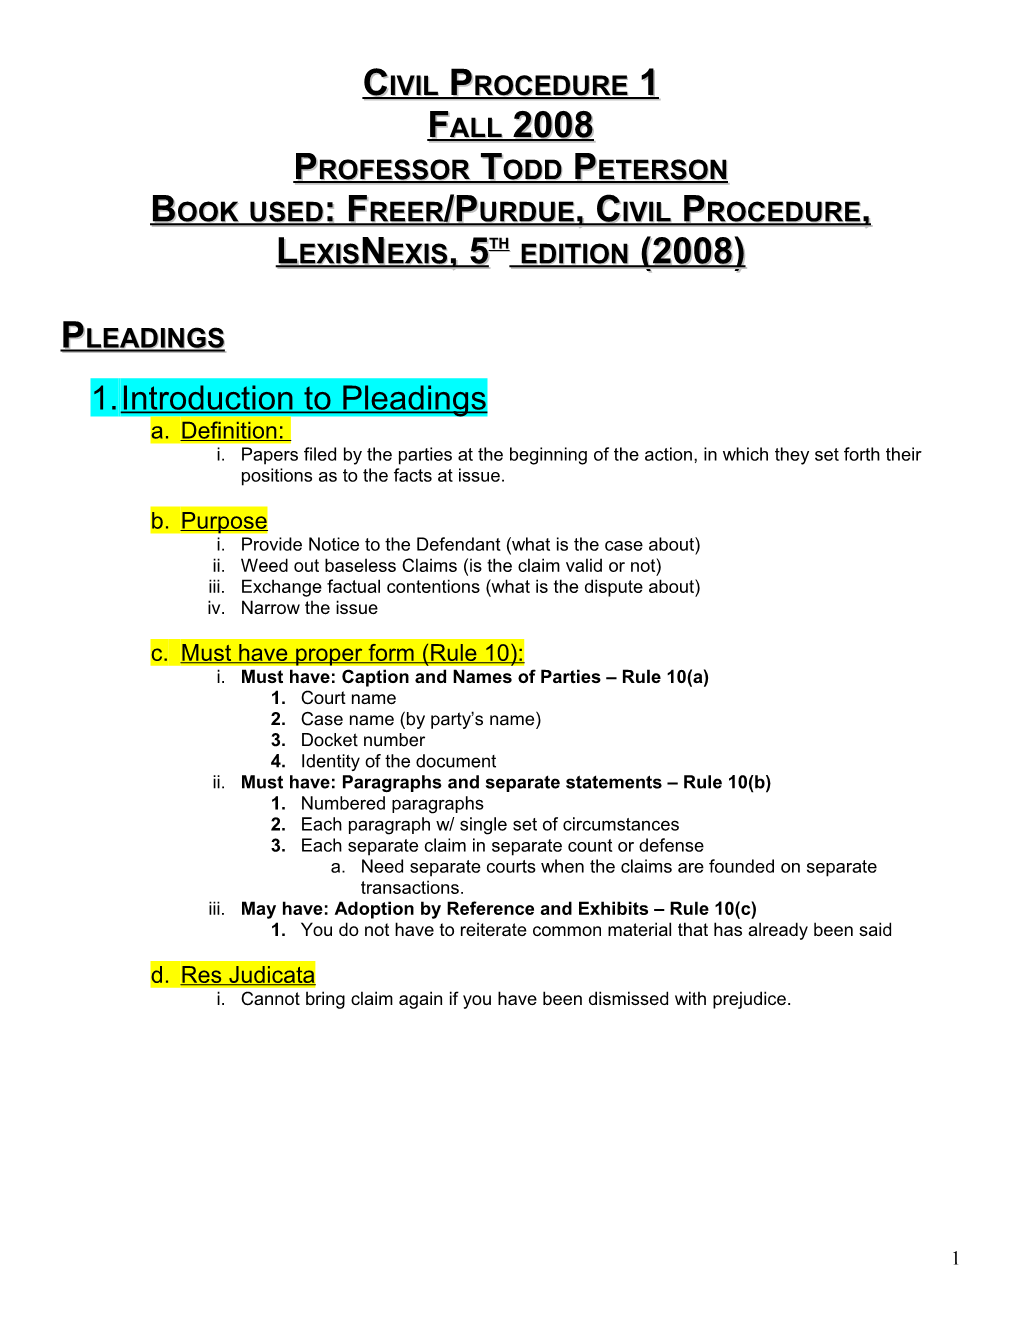 Book Used: Freer/Purdue, Civil Procedure, Lexisnexis, 5Th Edition (2008)